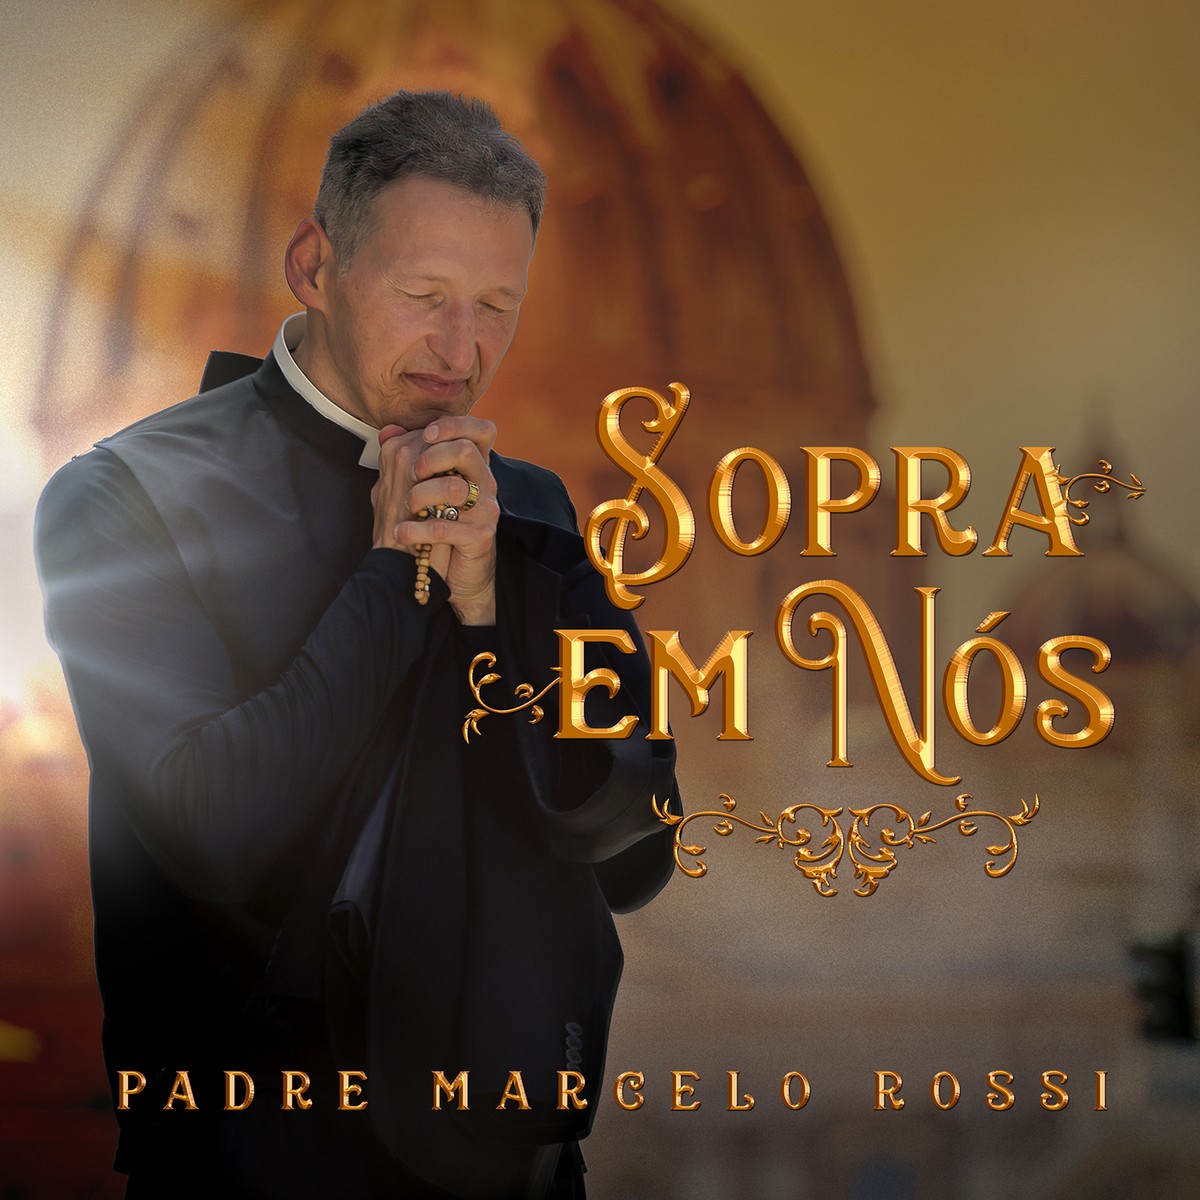 Padre Marcelo Rossi lança o single mais climático de disco pautado pela fé em Maria | Blog do Mauro Ferreira